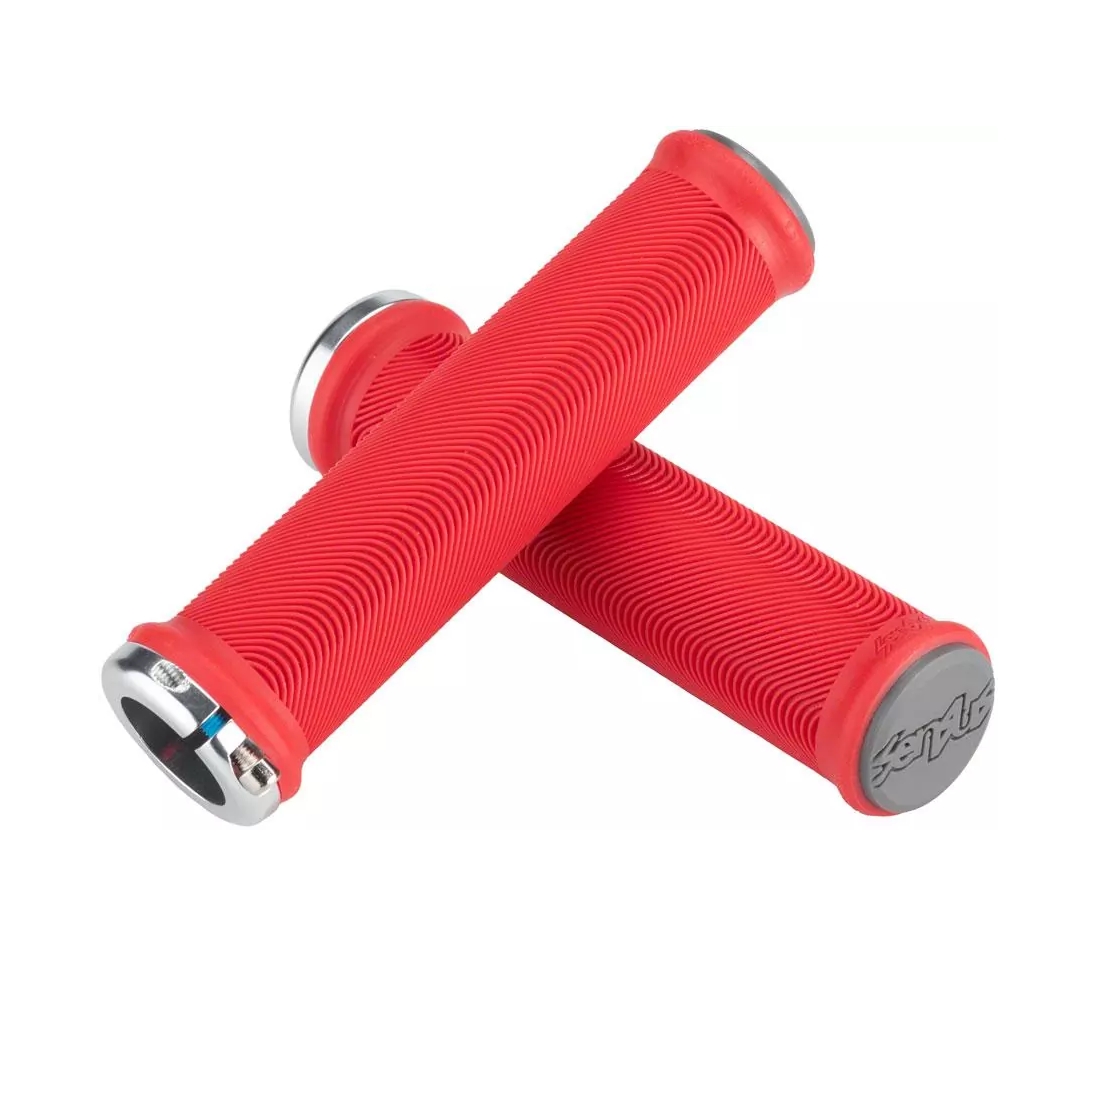 Paire de poignées Sensus Lite rouge 130mm